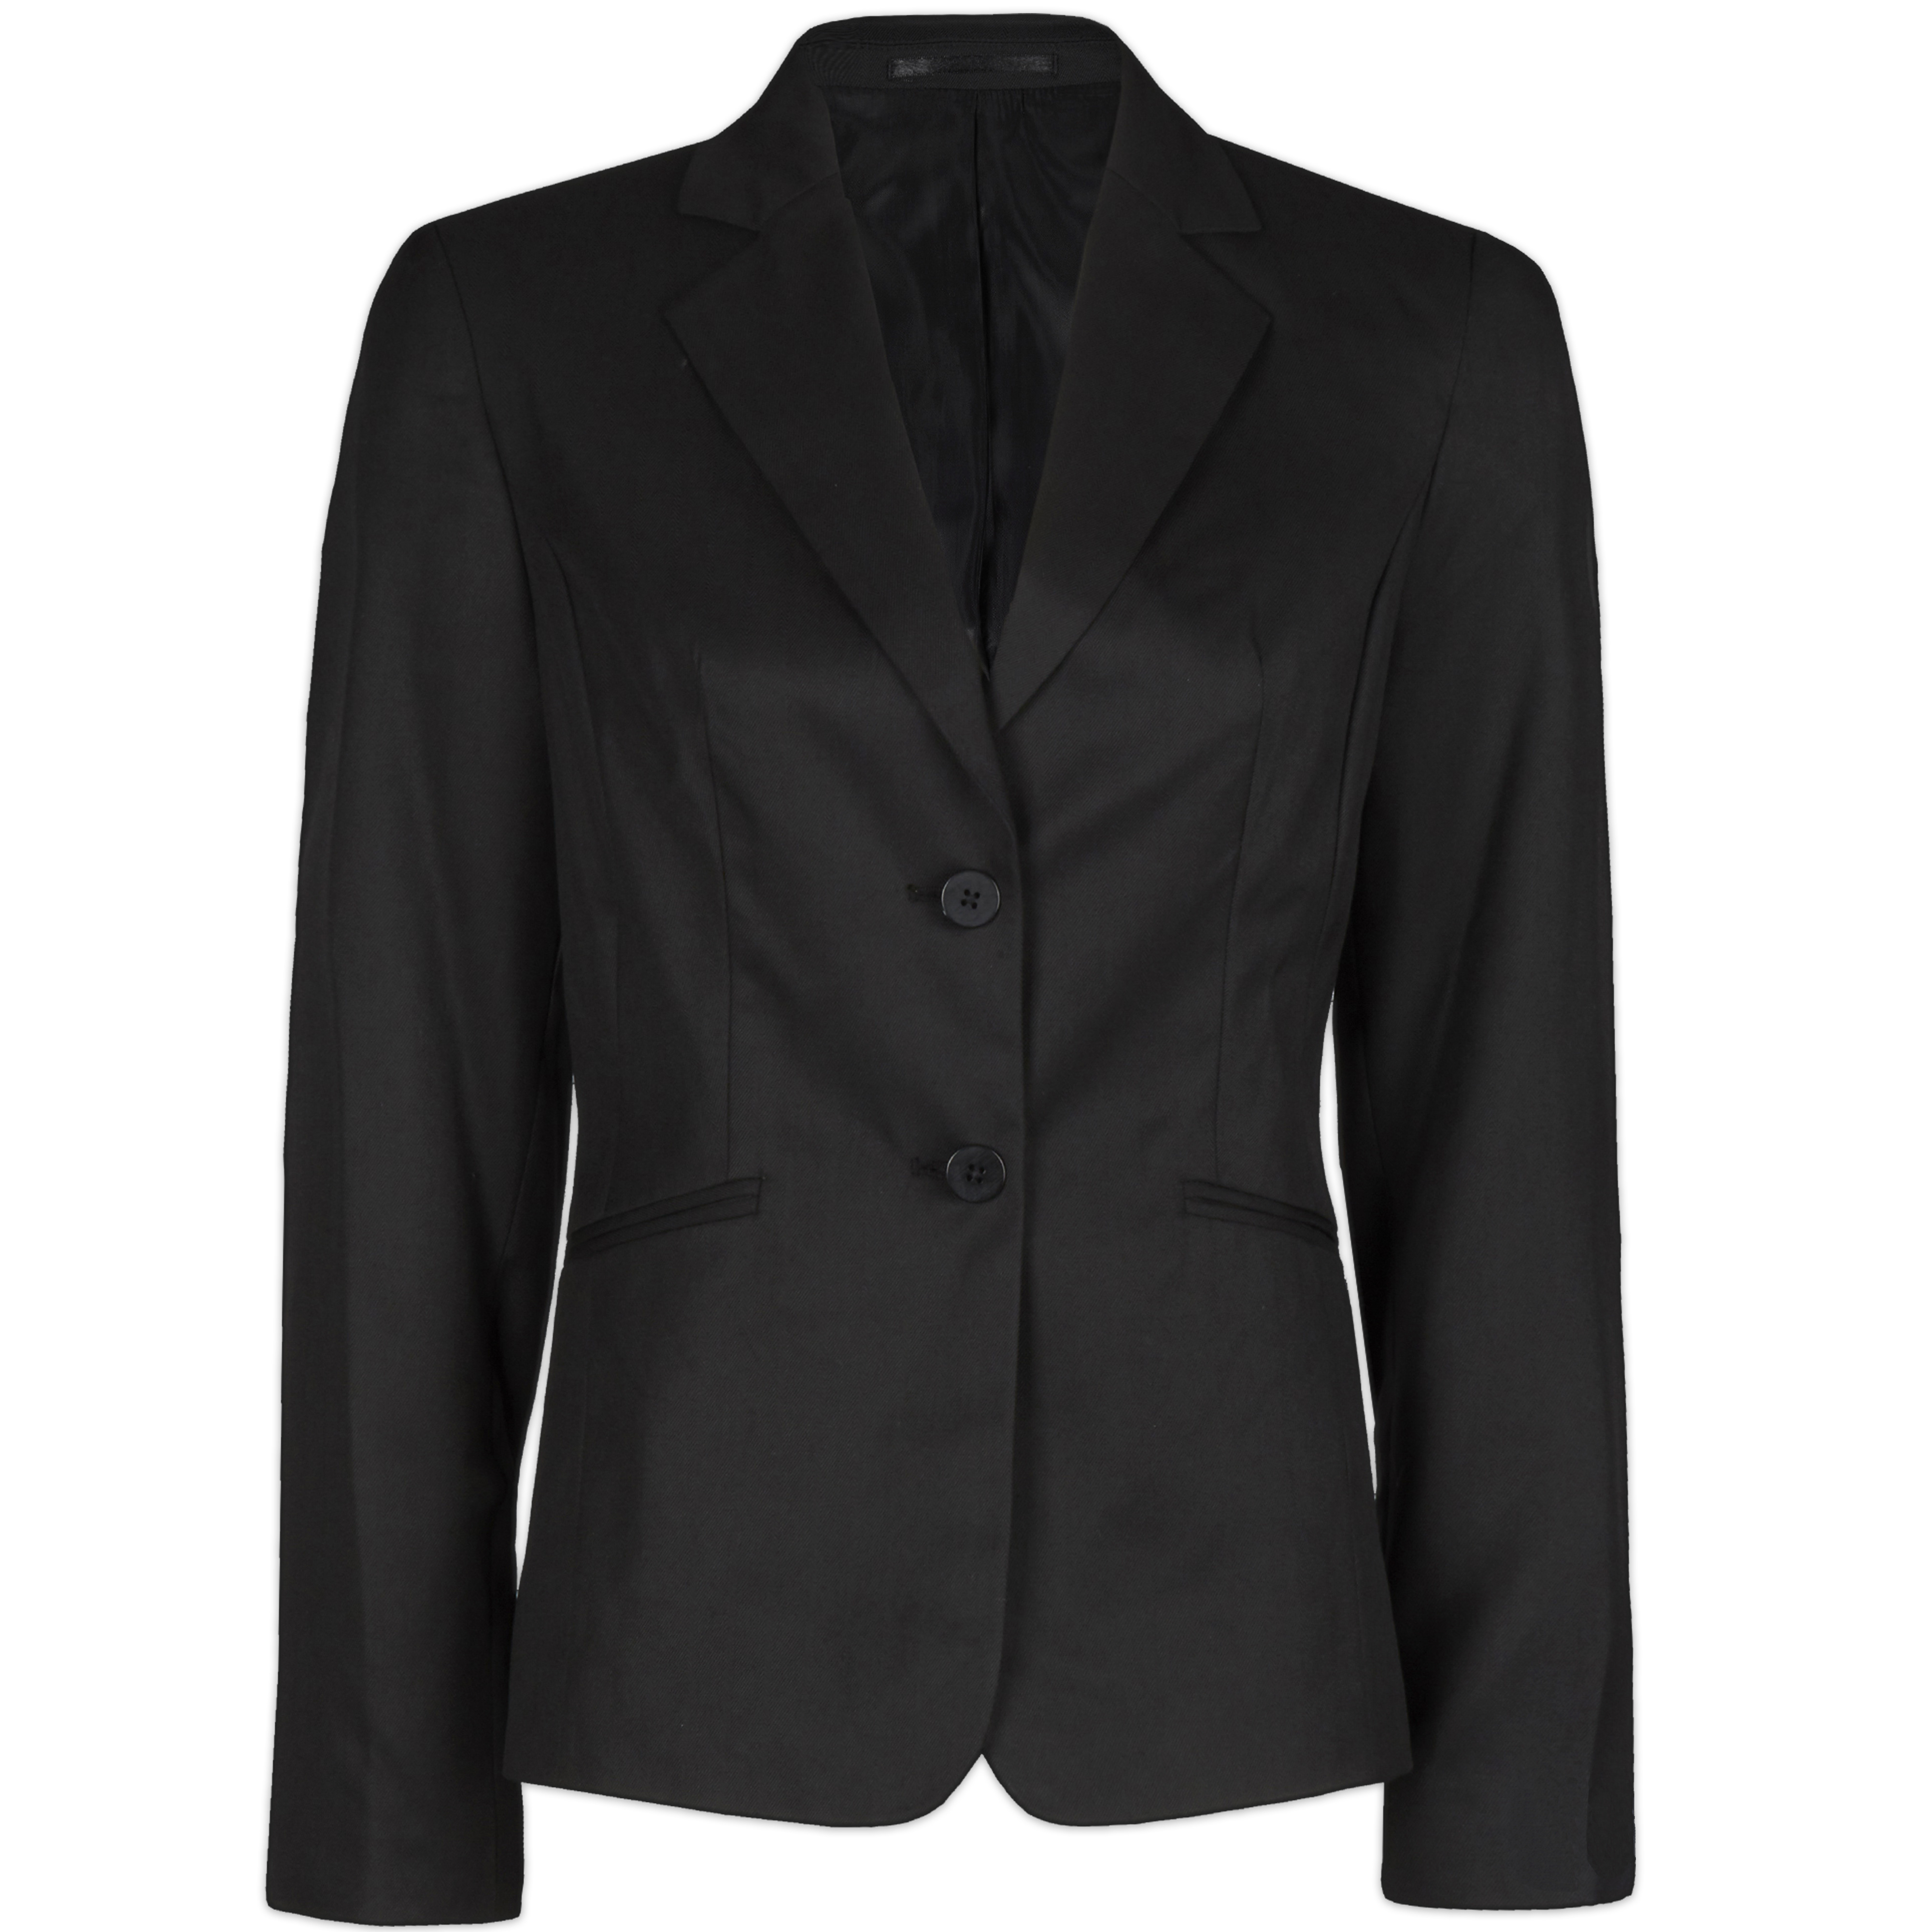 Womens Ladies Plain Formal Blazer Suit Jacket Officewear Workwear Two ...